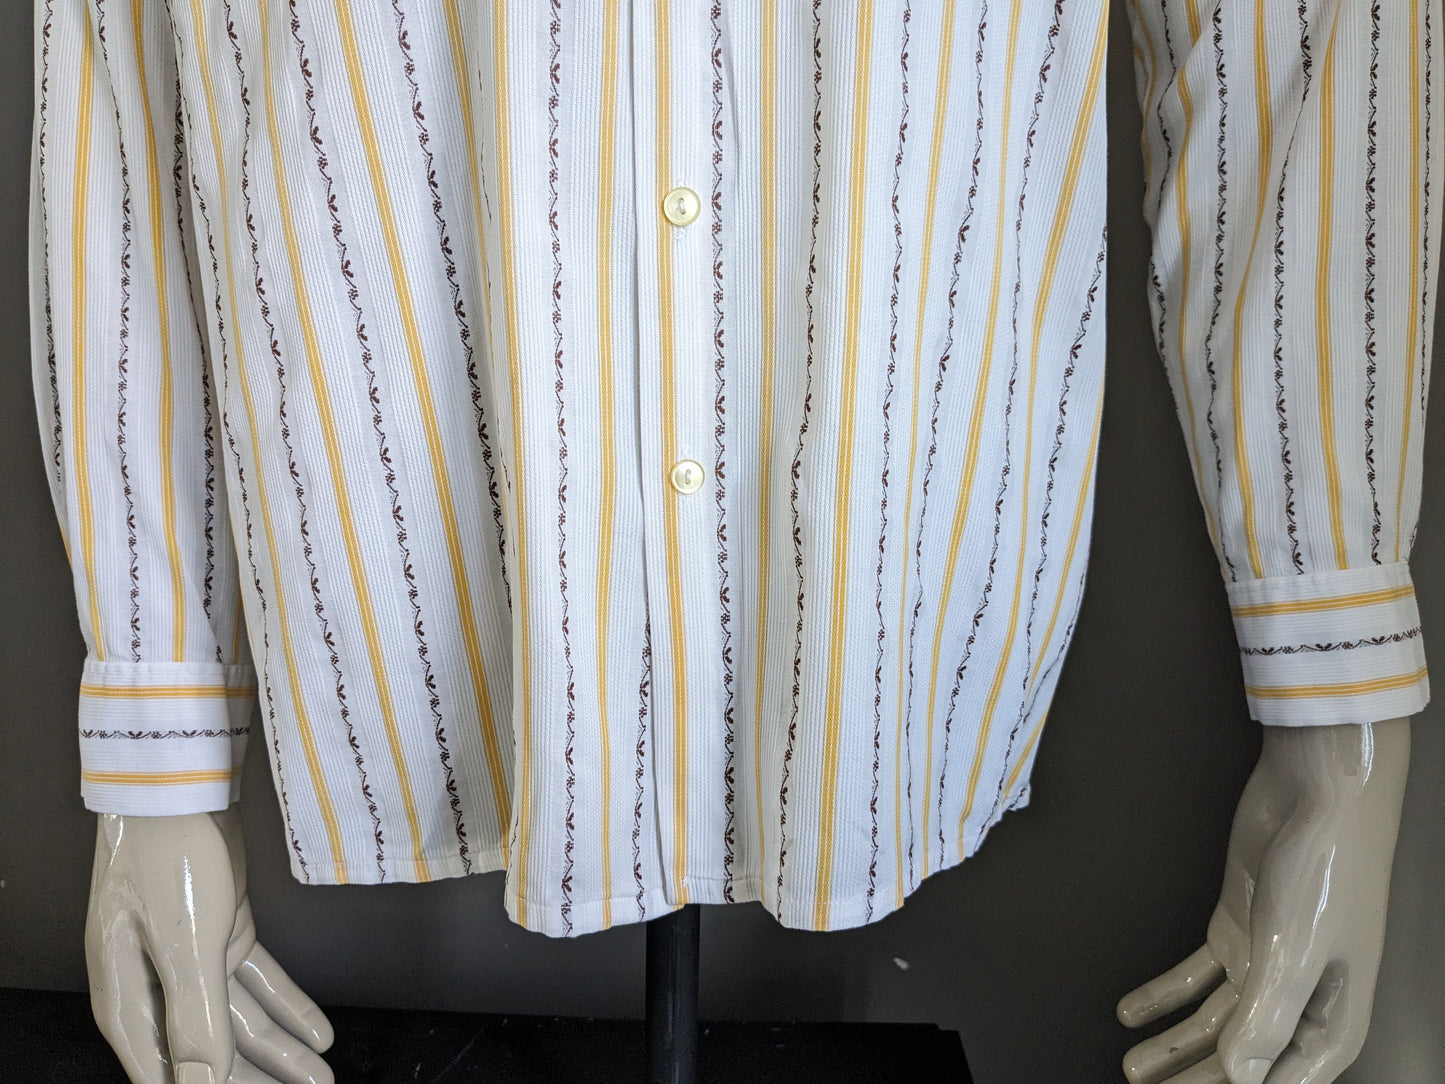 Camicia vintage degli anni '70 con colletto punto. Strisce bianche marrone giallo. Taglia L.